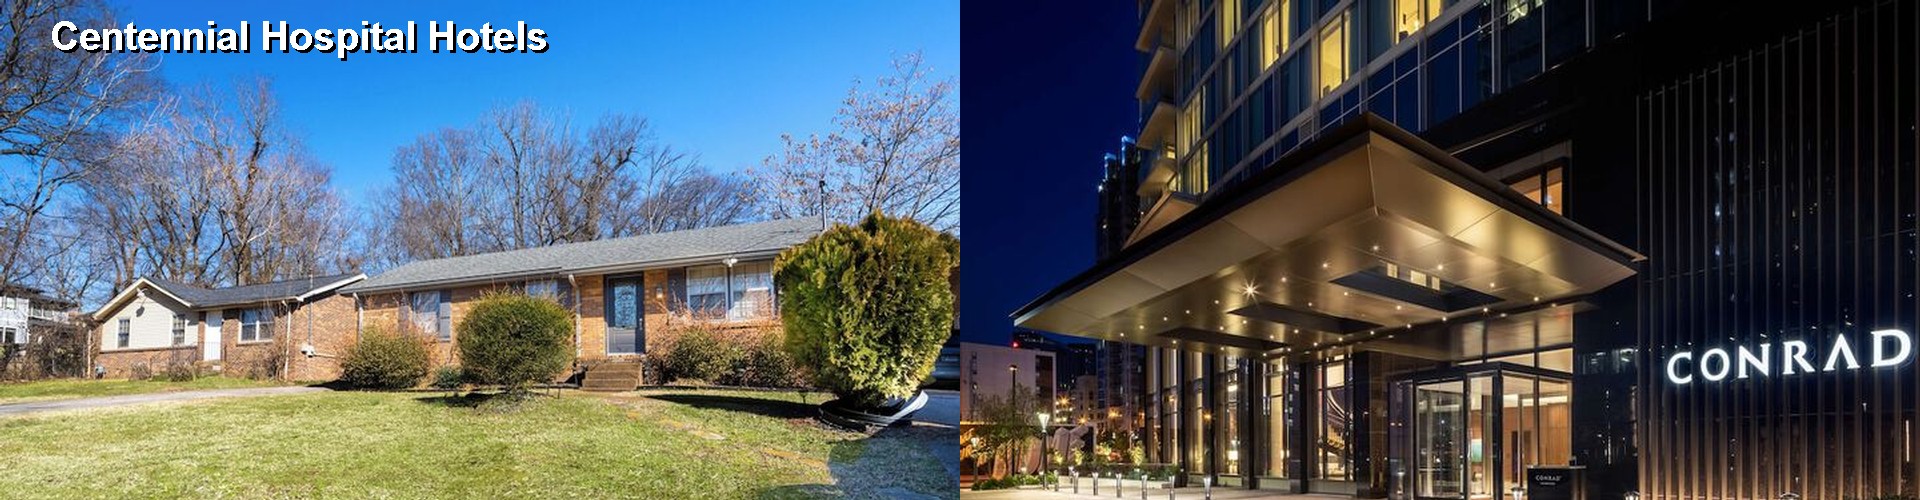 5 Best Hotels near Centennial Hospital